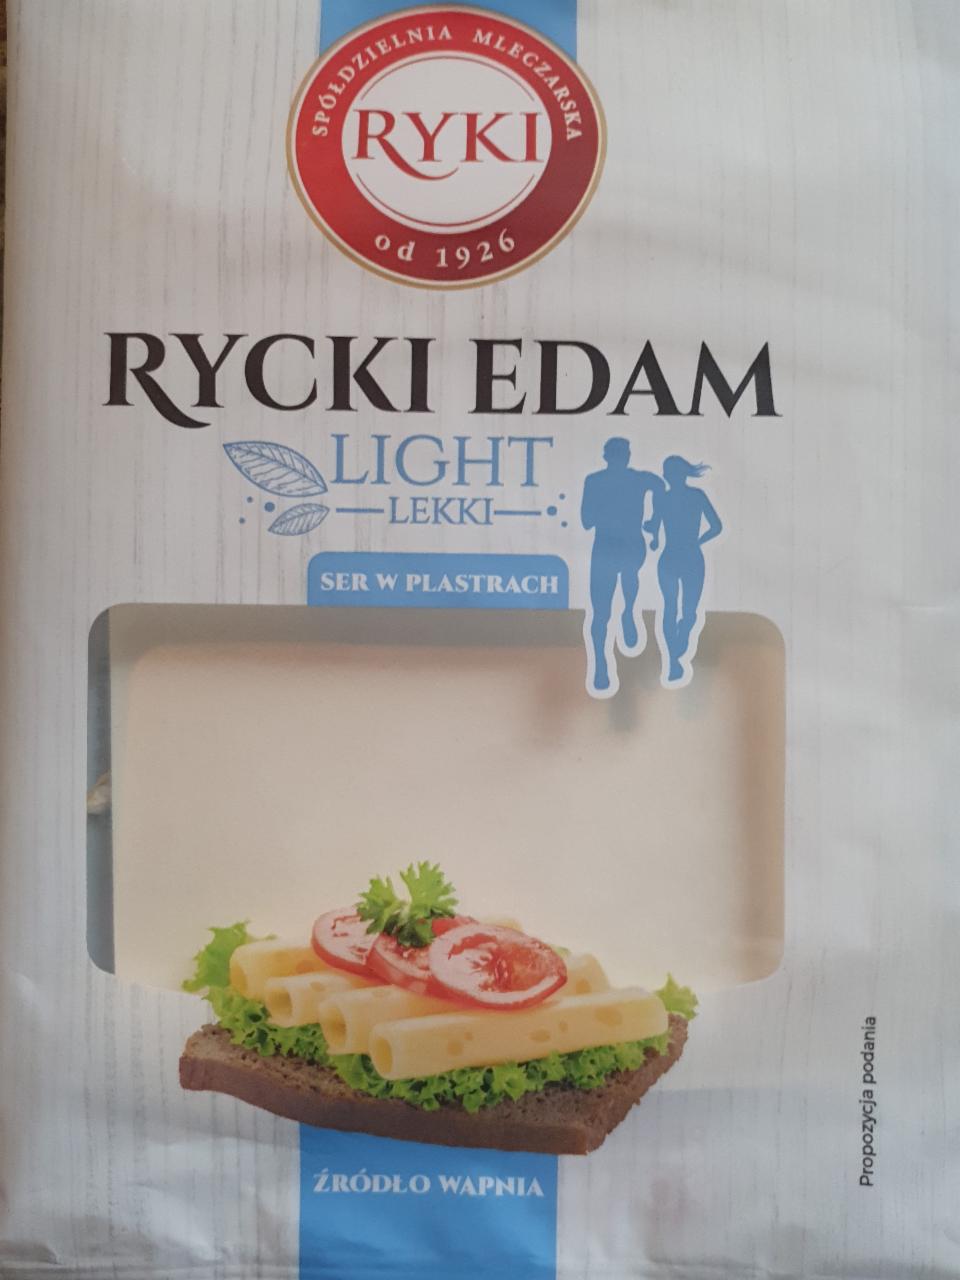 Fotografie - Rycki Edam light ser w plastrach Ryki